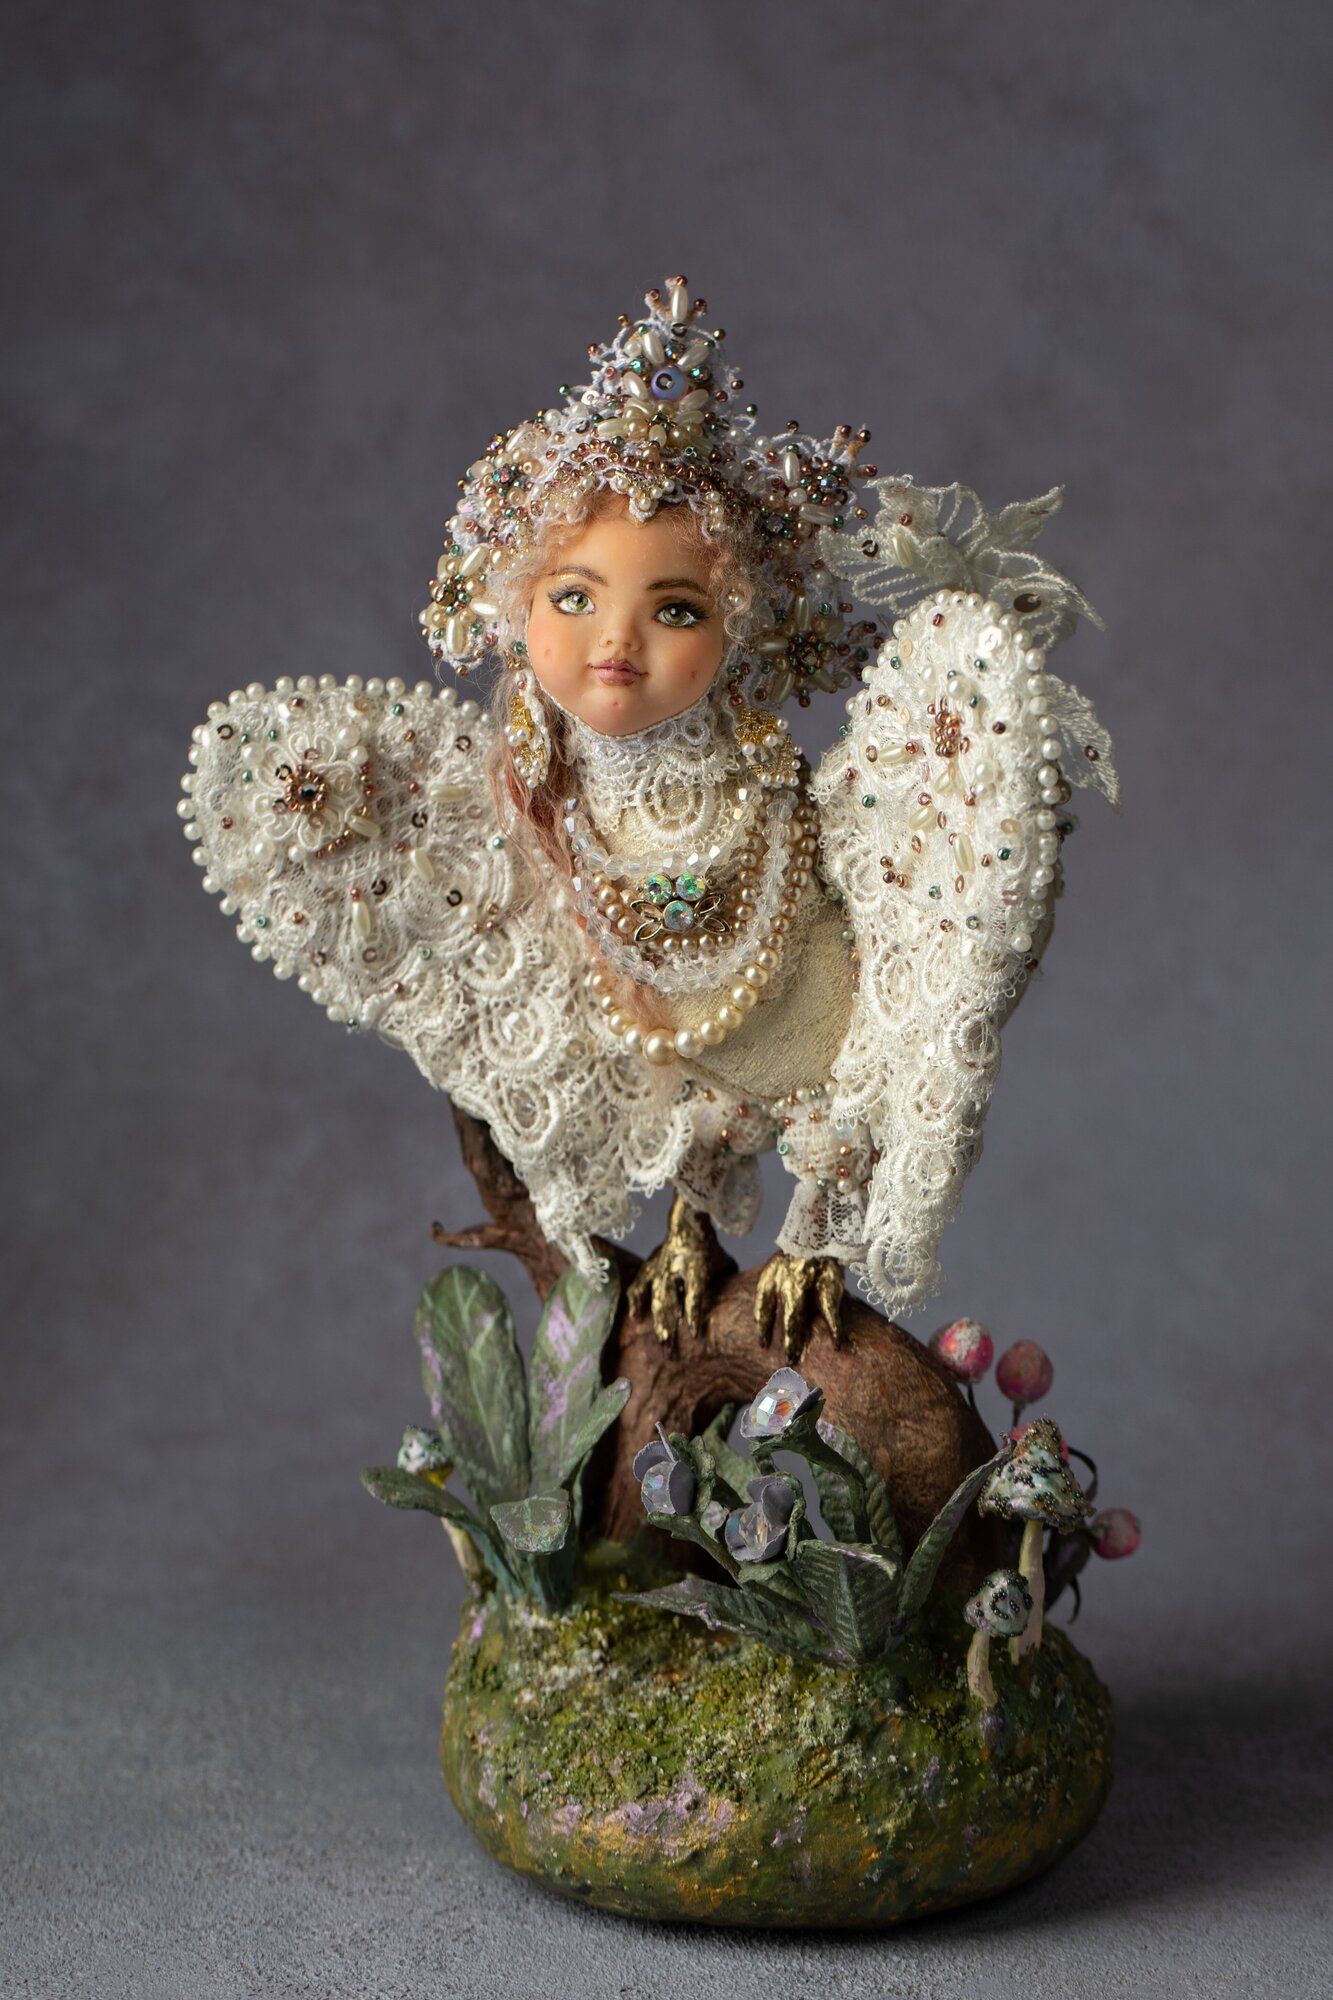 Авторская кукла ручной работы "Птичка" украшена бисером, интерьерная